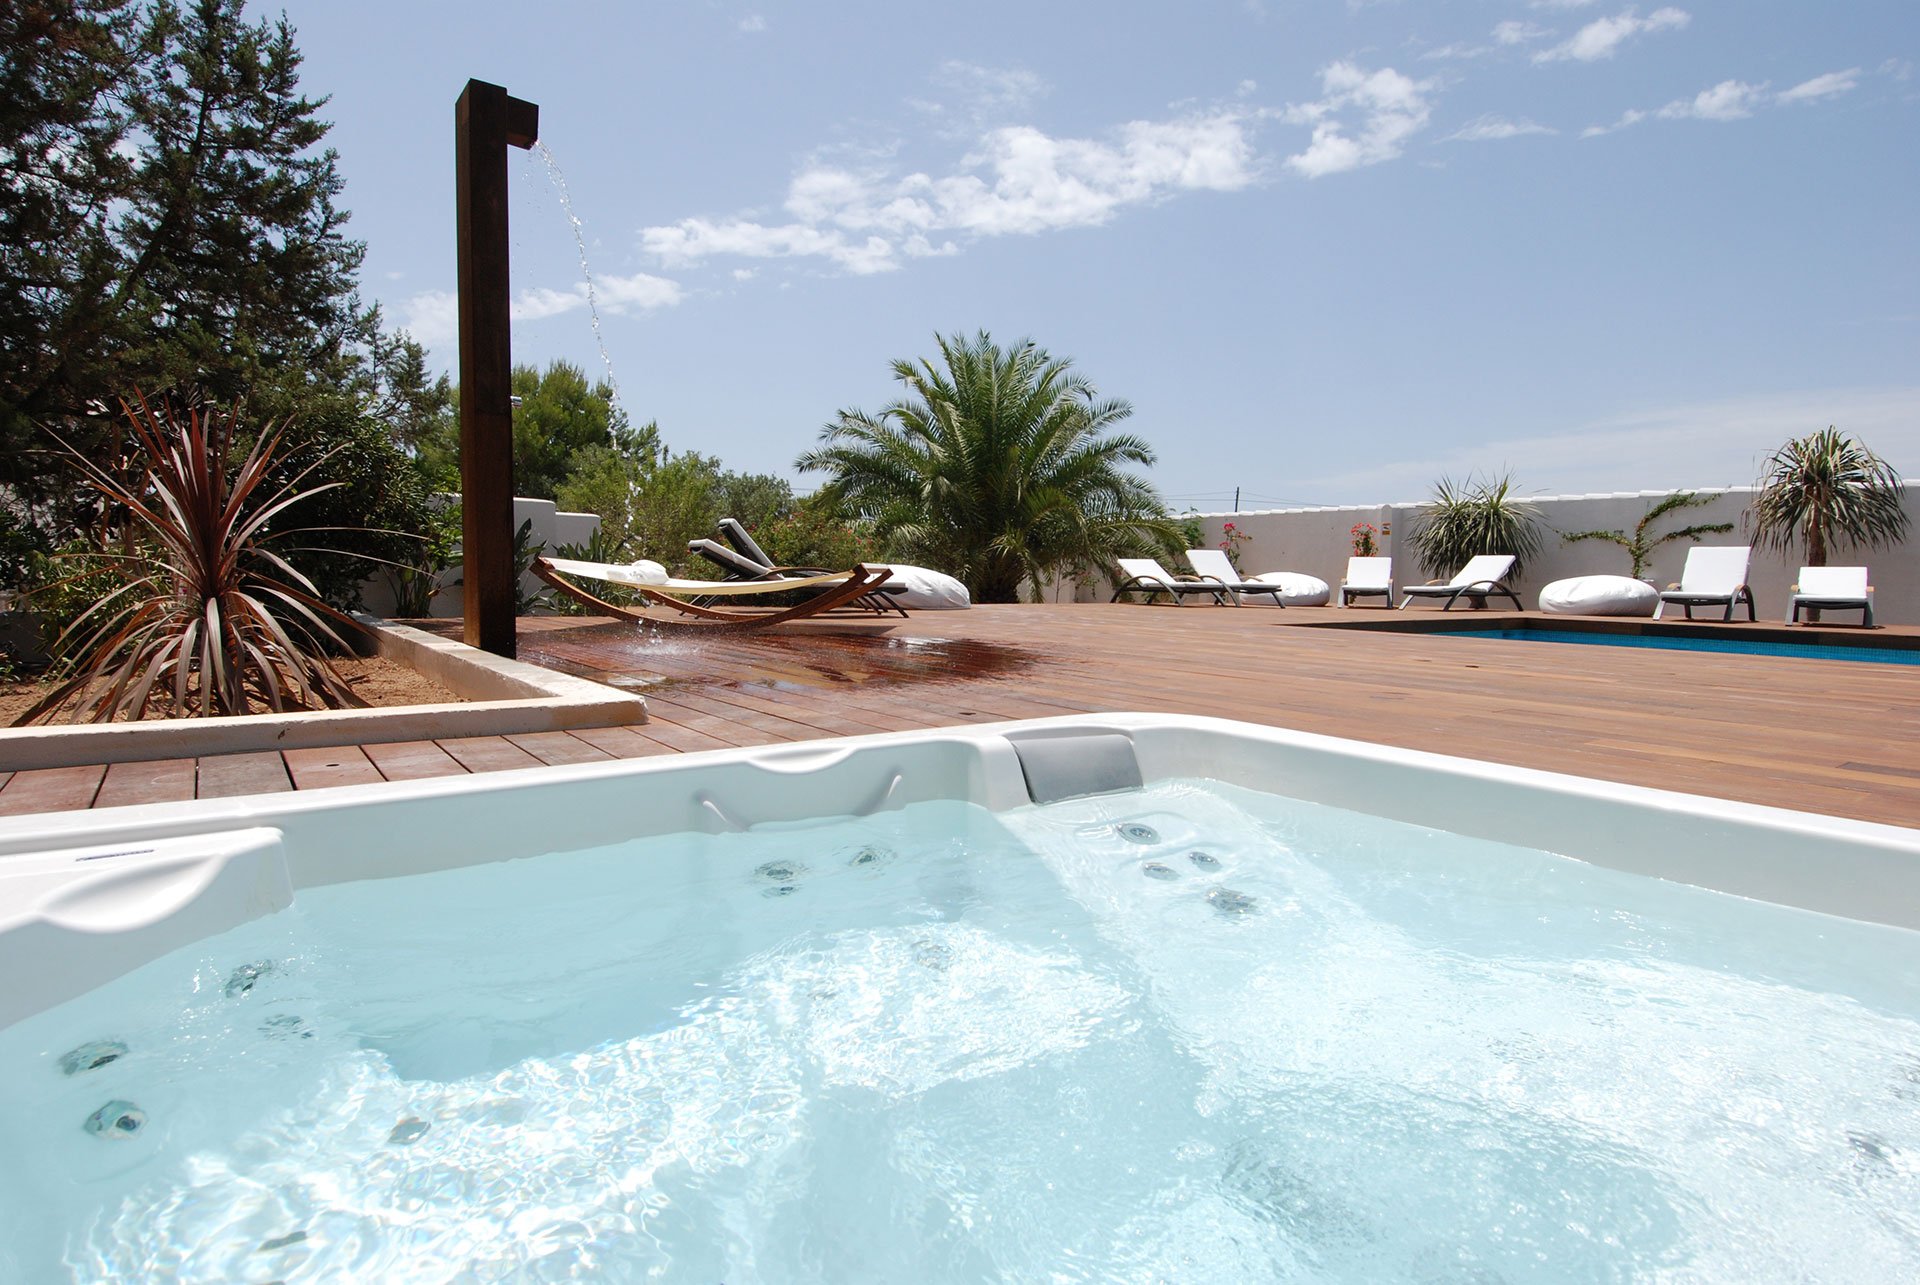 La Hisenda és el millor allotjament a Formentera segons Booking: "El paradís existeix"